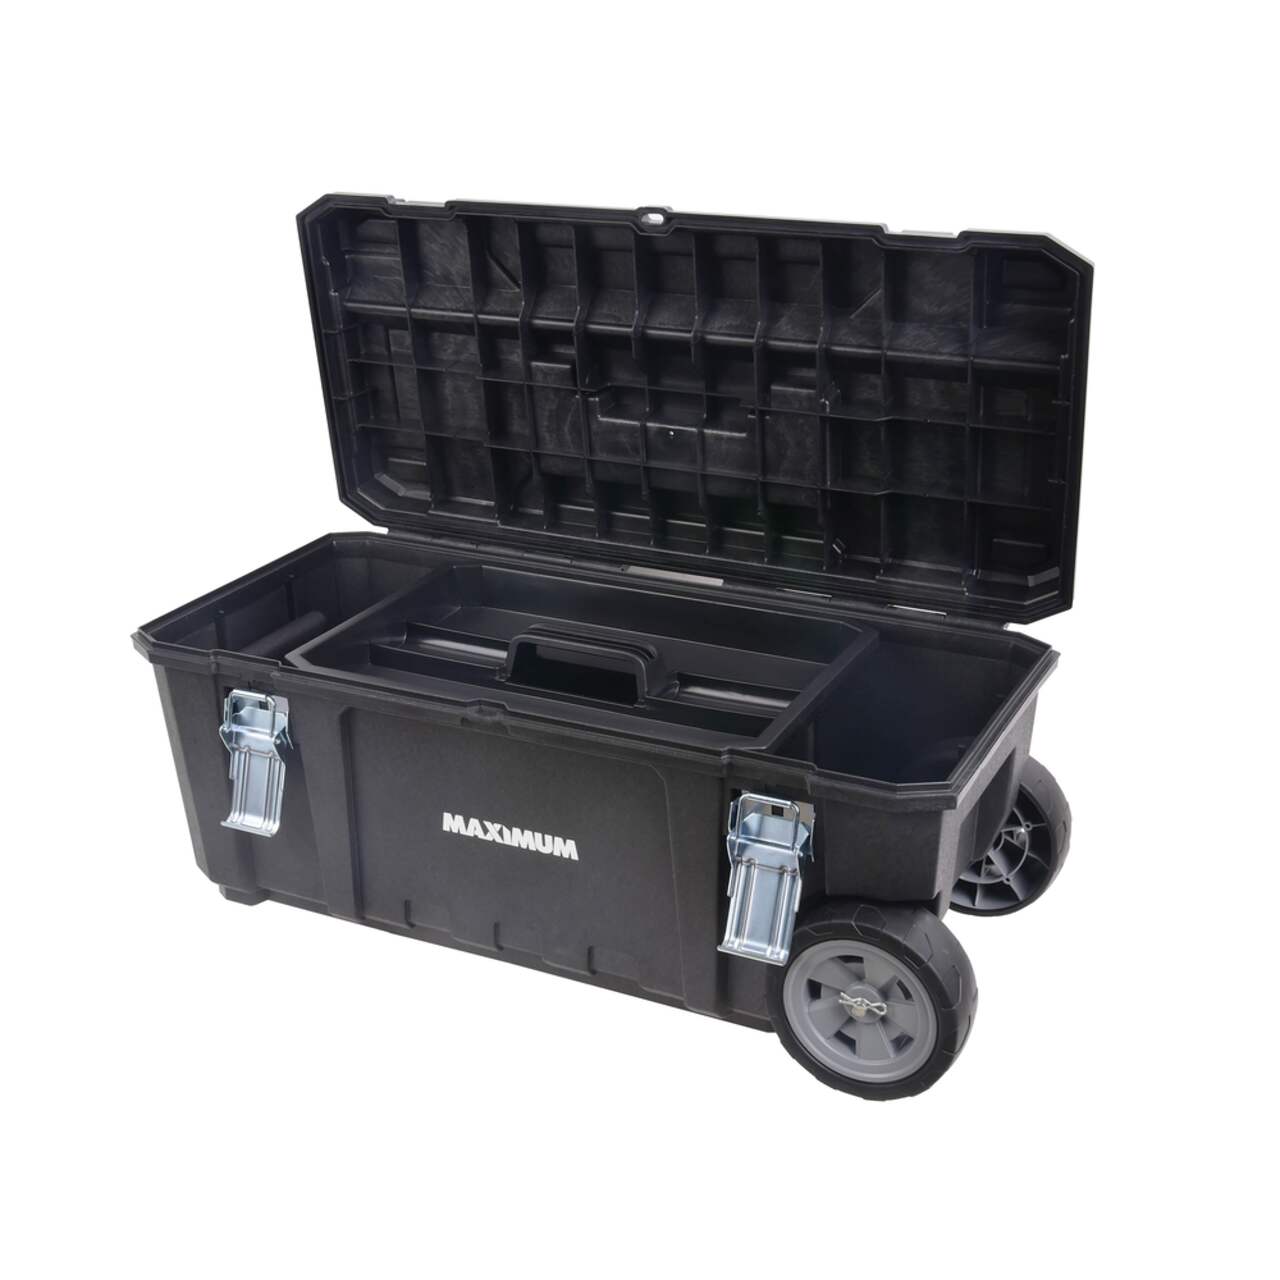 MAXIMUM Portable Plastic Rolling Tool Box w/ Handle, Black, 28-in